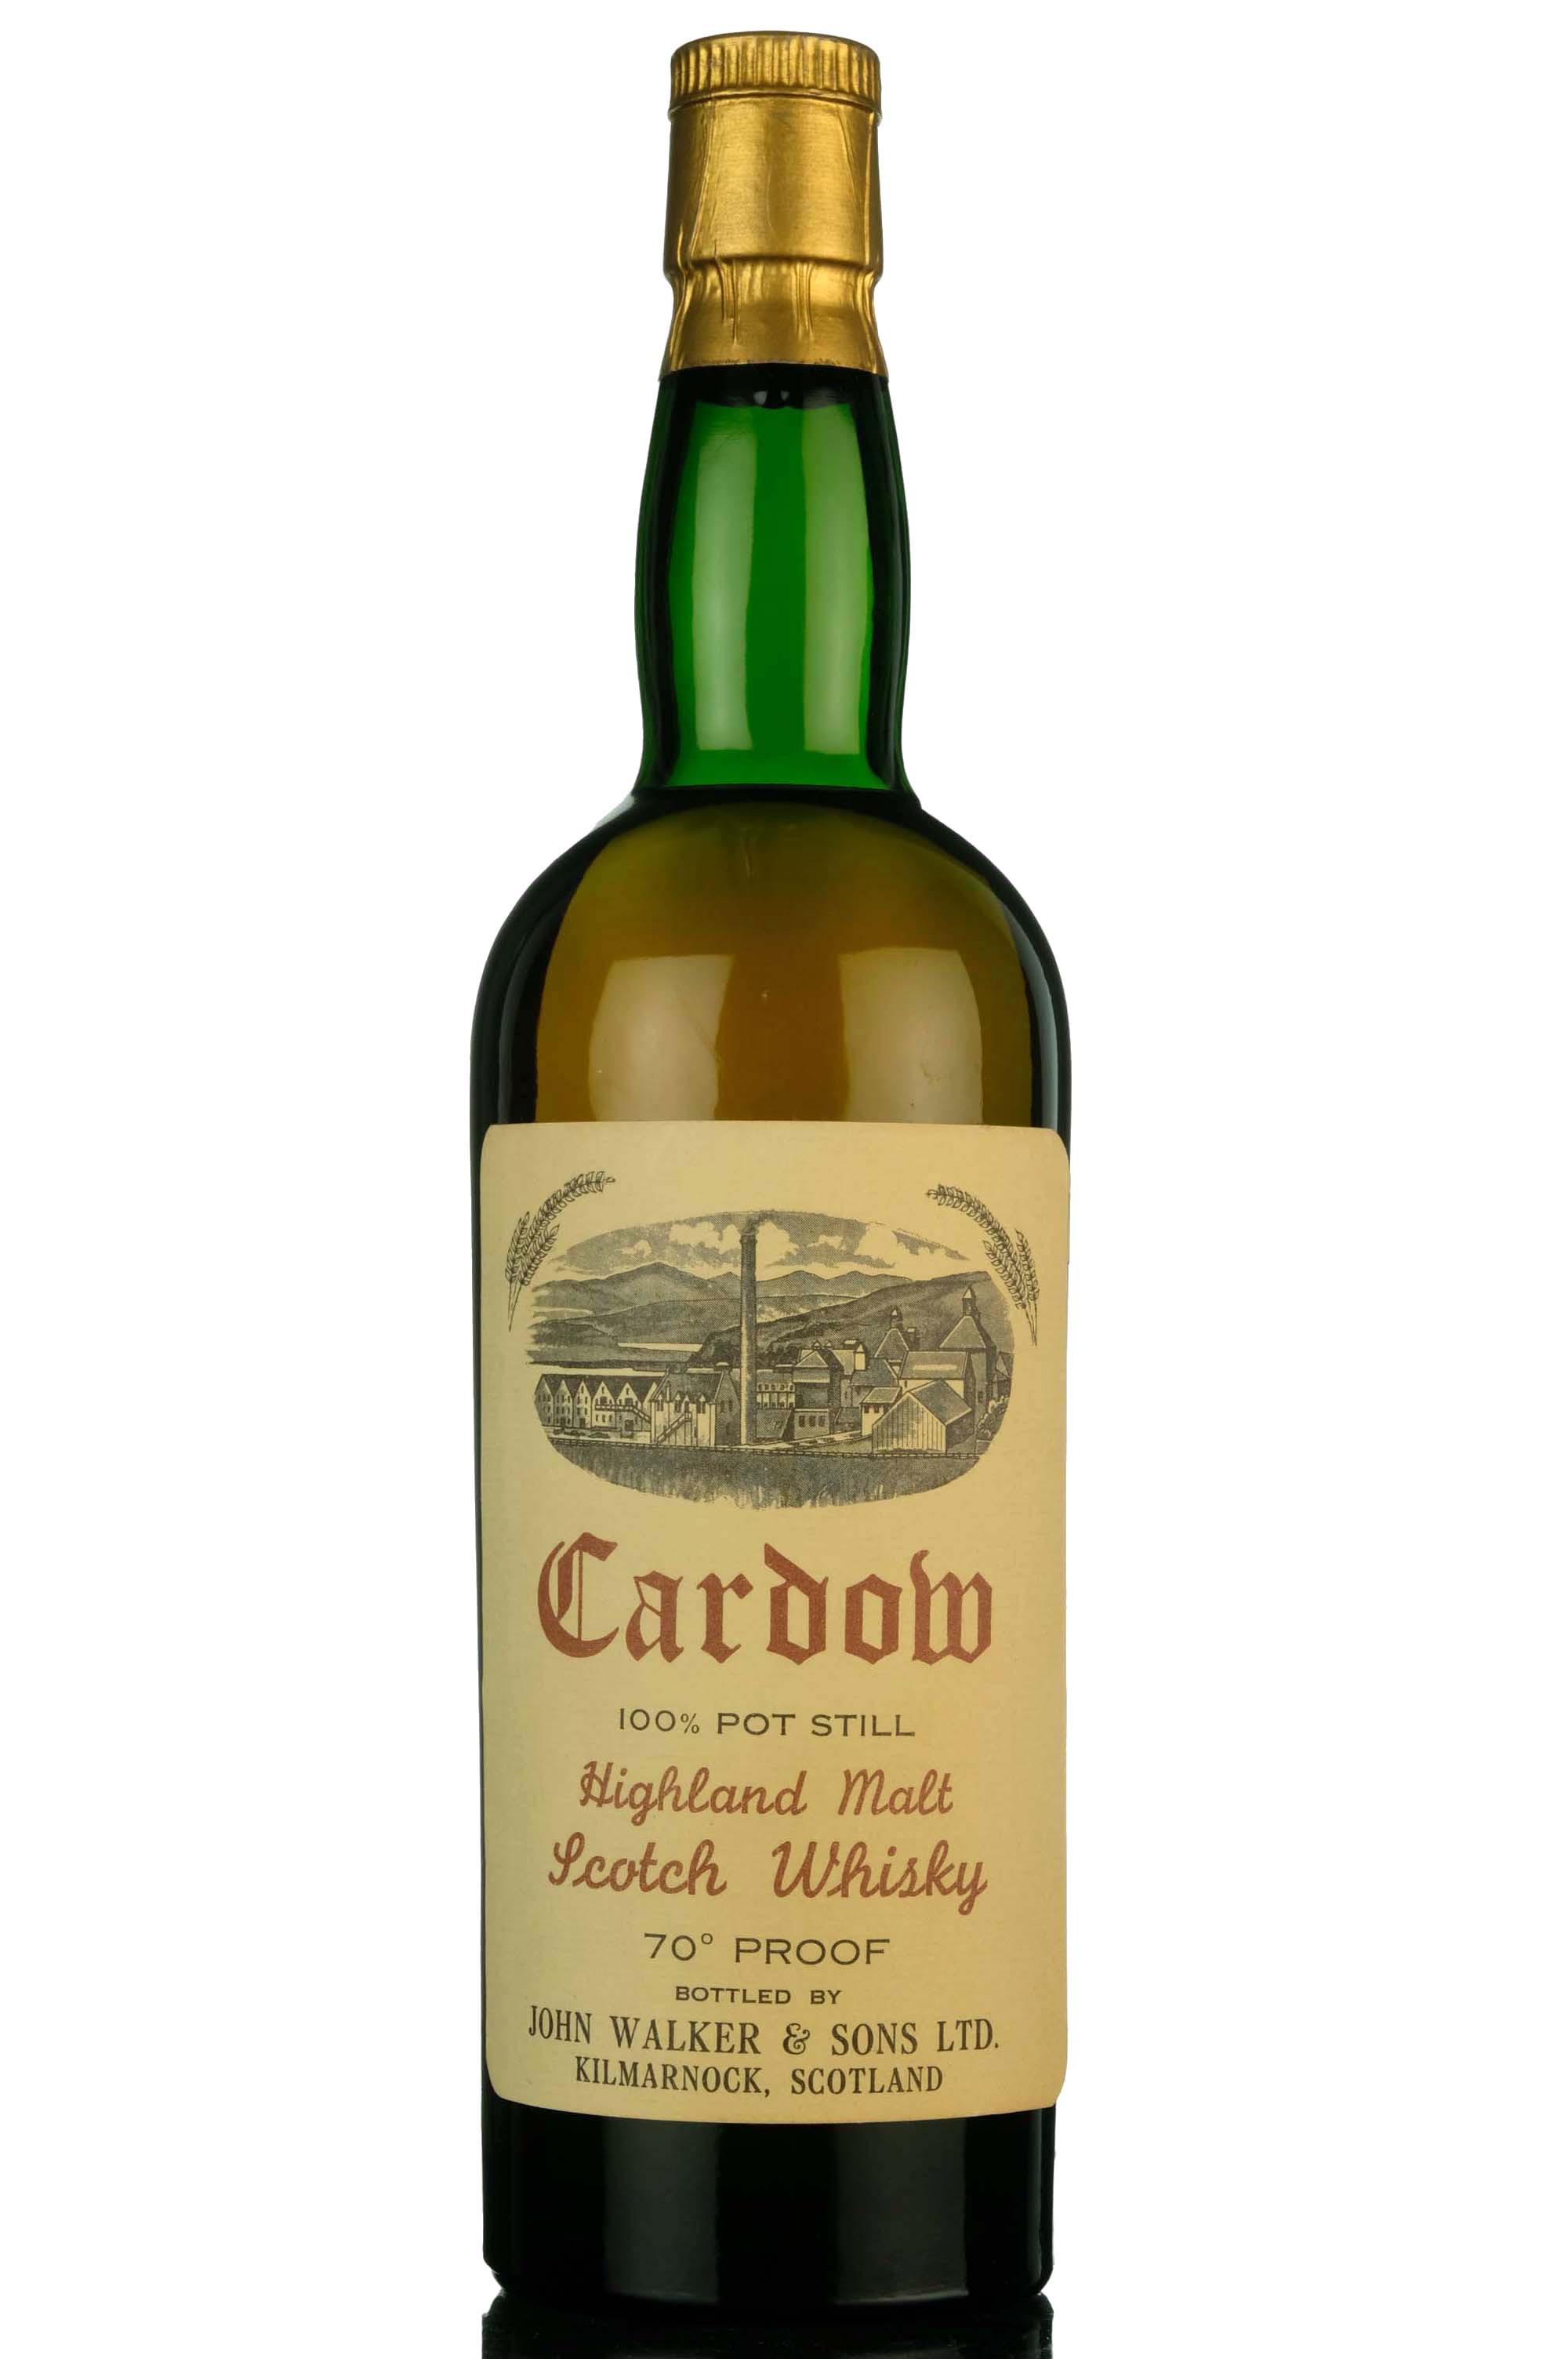 Cardow 100% Pot Still - John Walker & Sons - 1960s